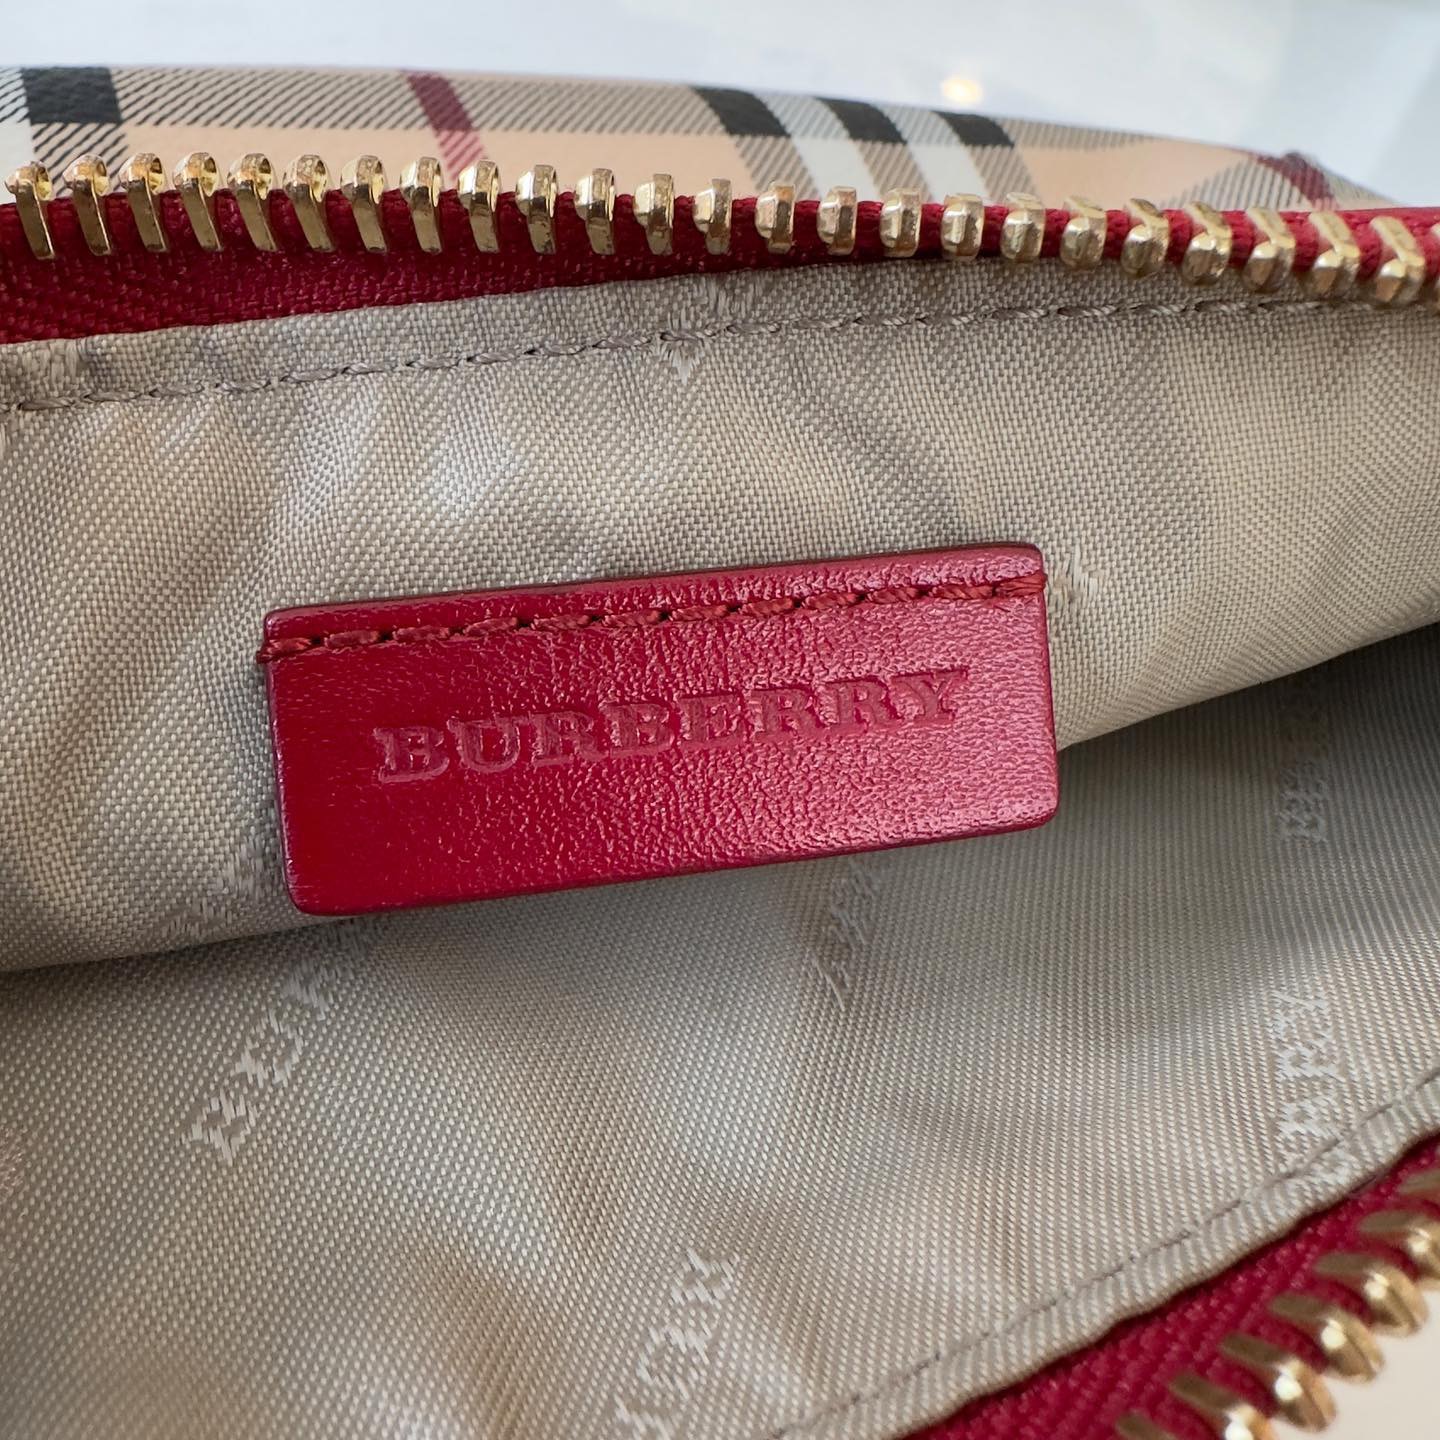 Pochette Burberry in tela plastificata (check vintage) e finiture